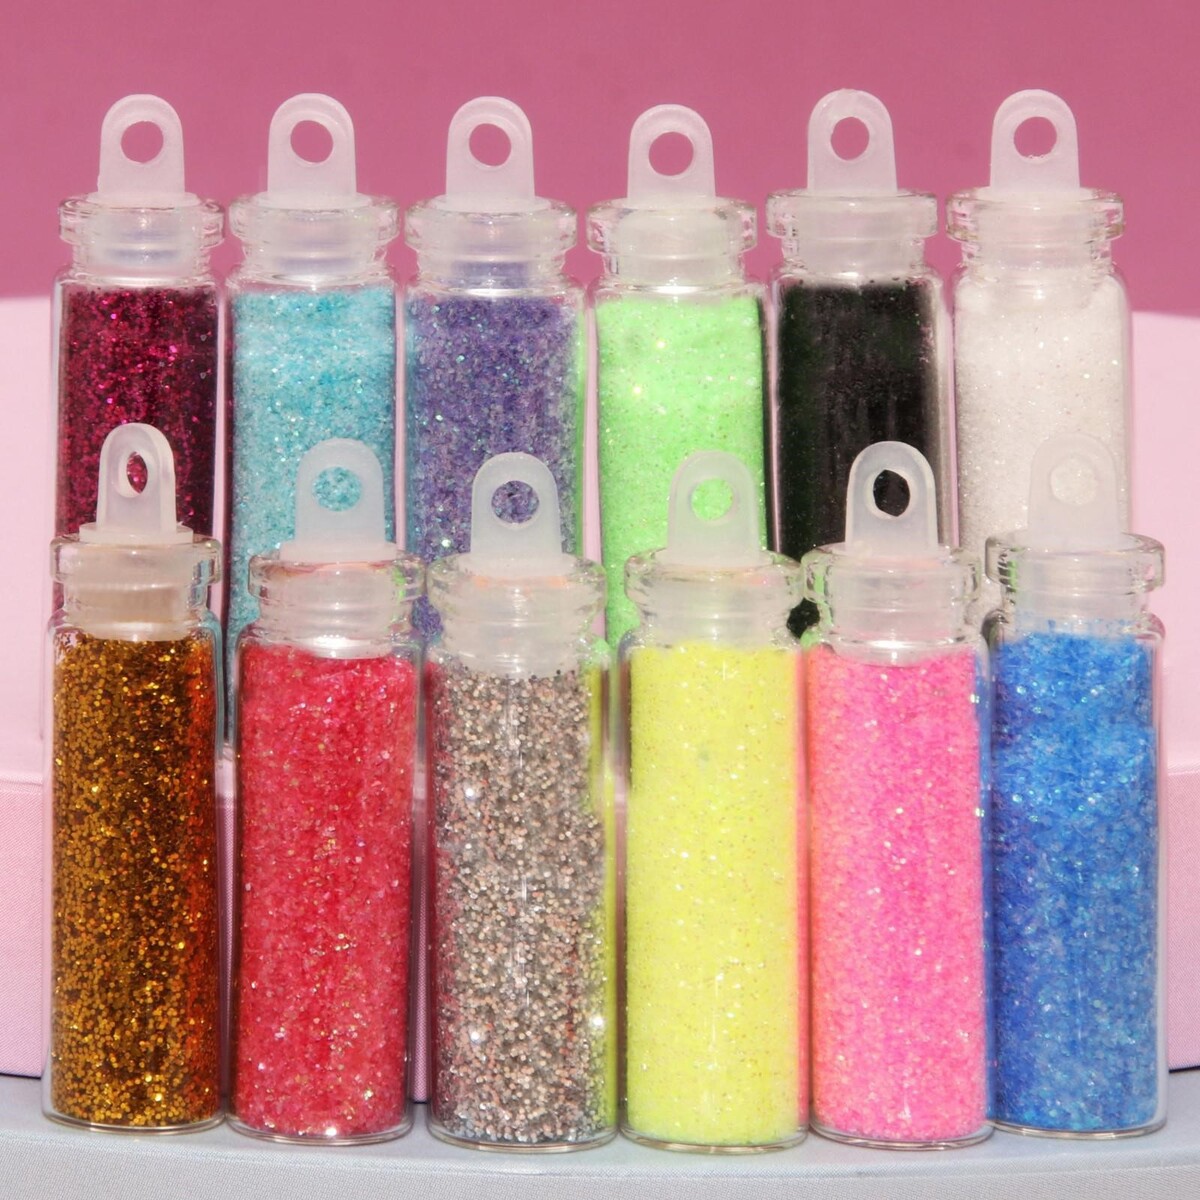 Блестки для декора, мелкие, набор 12 бутылочек, разноцветные мелкие кристаллы для декора ногтей unicorn new year